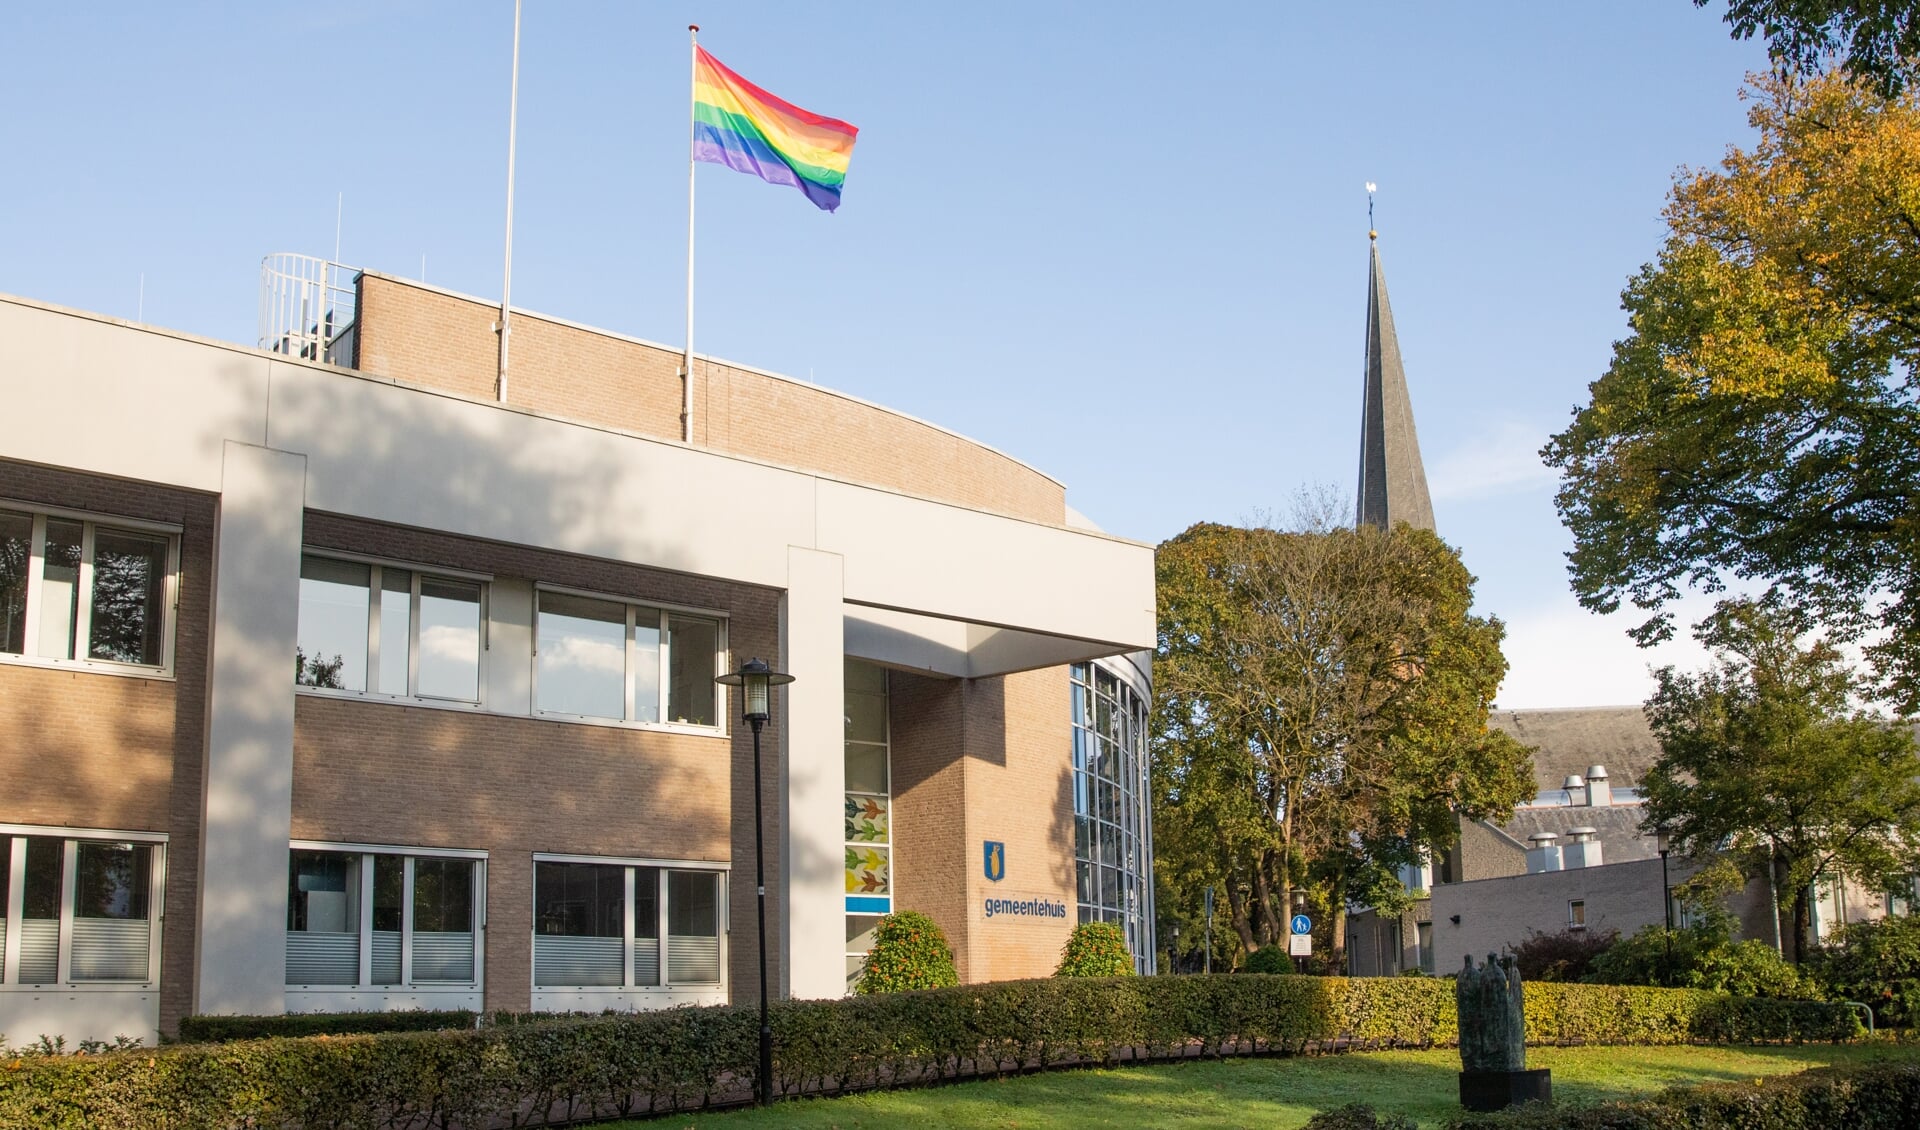 
De regenboogvlag wordt zondag in Baarn uitgehangen.